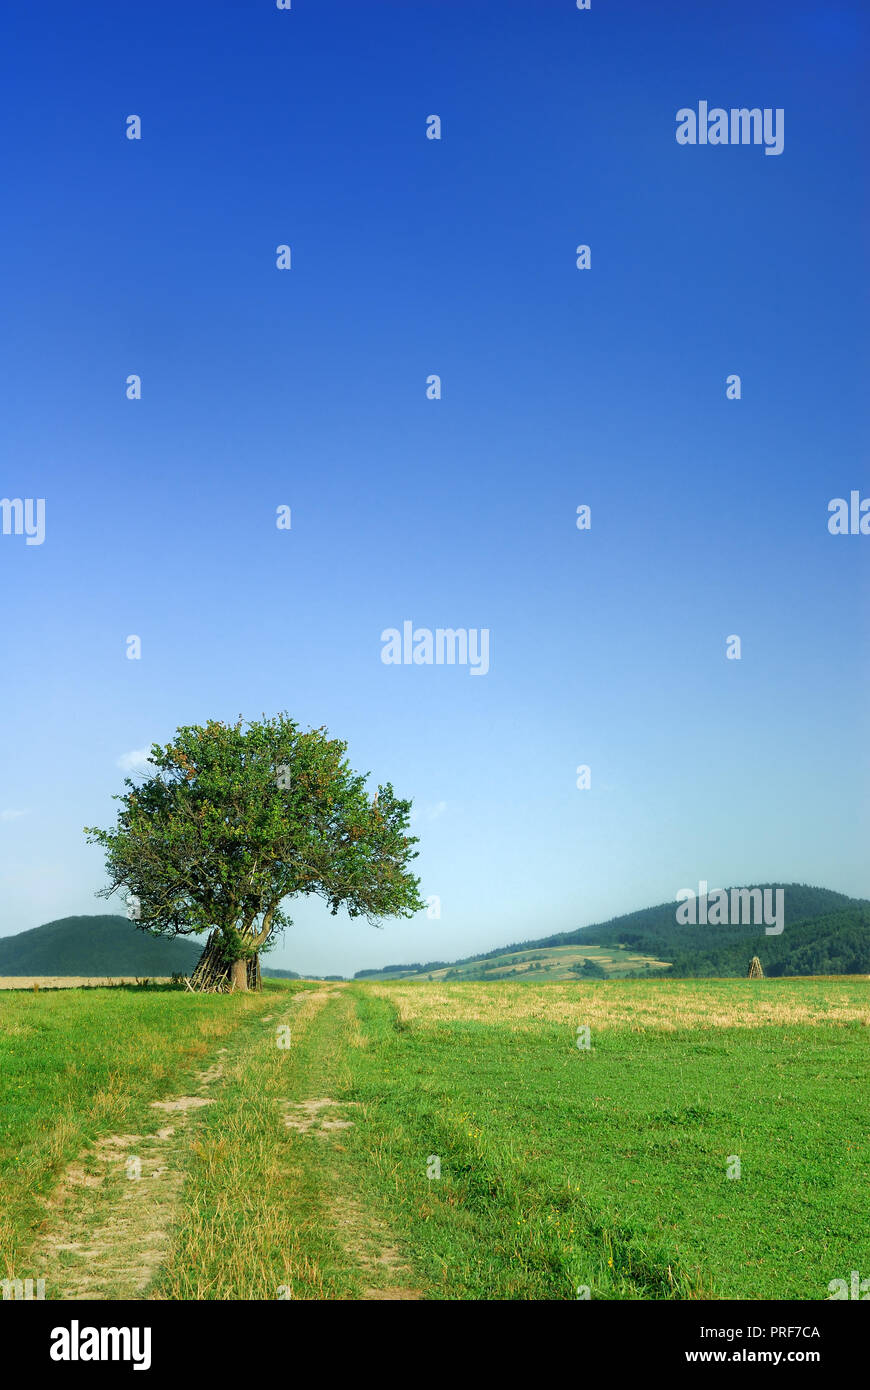 Paesaggio idilliaco, lonely tree tra campi verdi, cielo blu in background Foto Stock